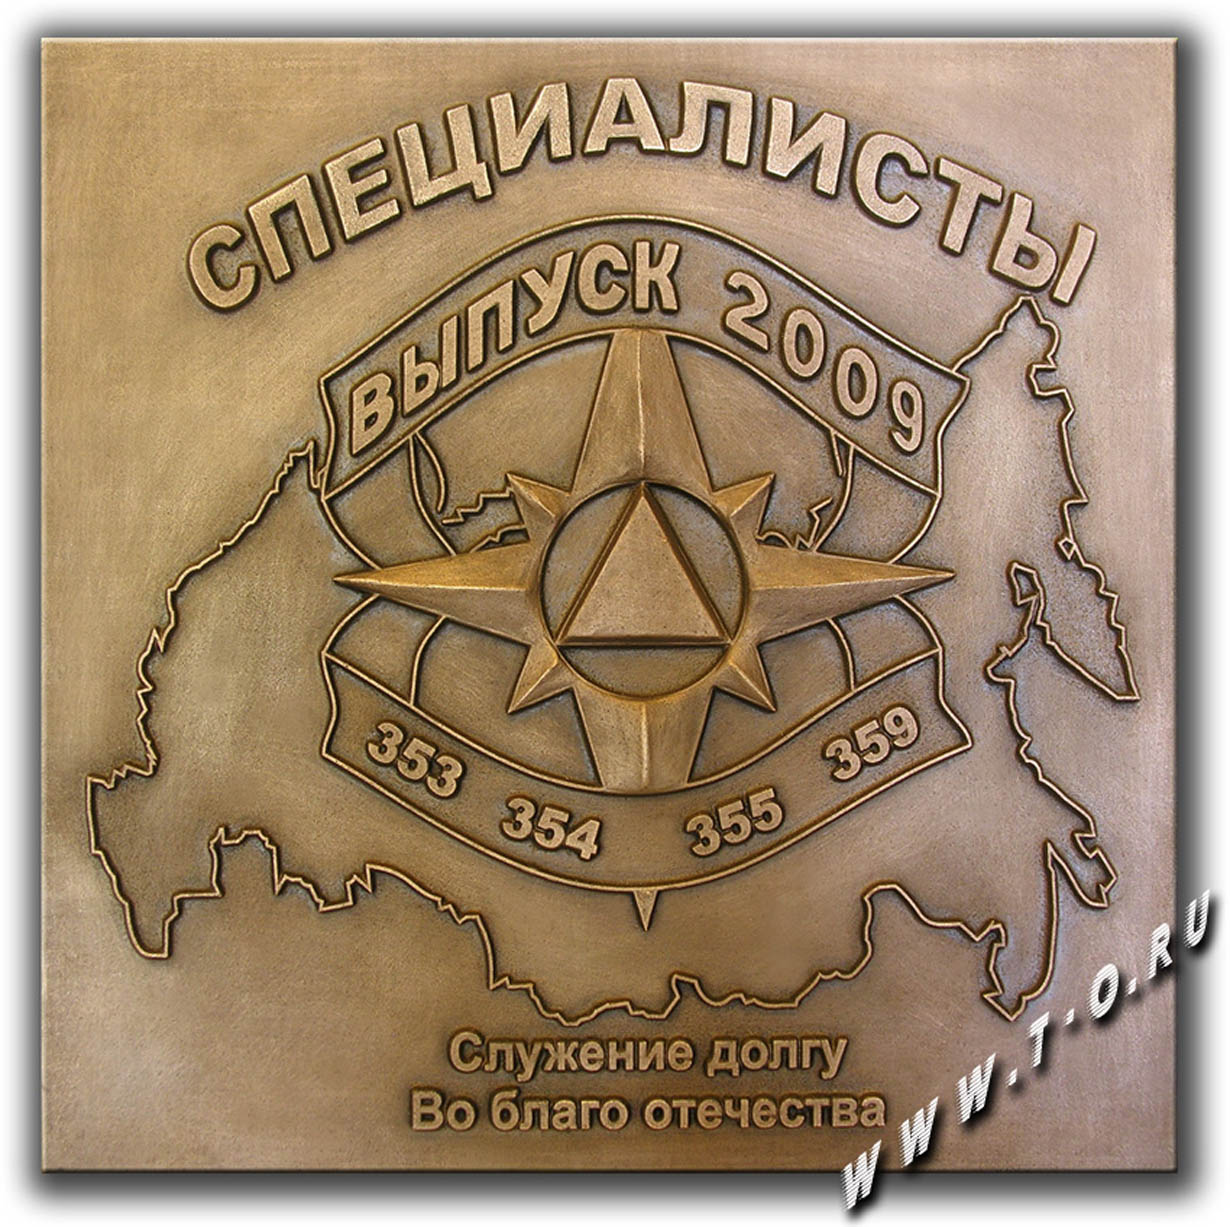  Изготовление бронзовой памятной мемориальной доски для  выпускников училища МЧС России в 2009 году. Изготовленная мемориальная доска установлена на алее славы училища.